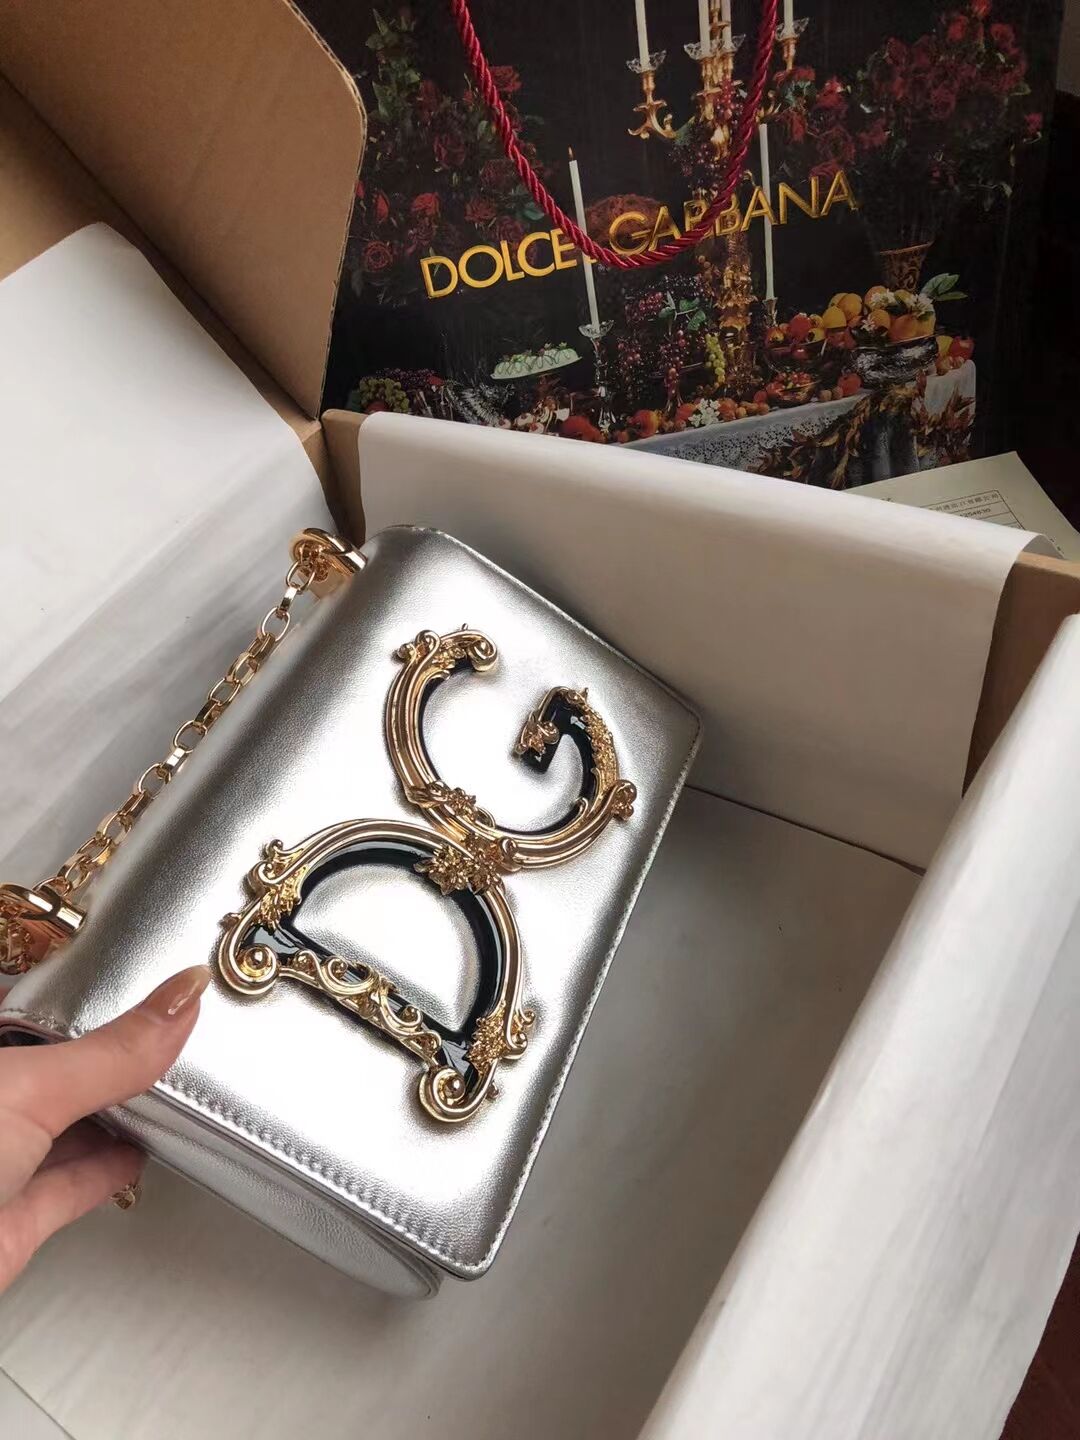 Dolce & Gabbana Origianl Leather Shoulder Bag 4006 silver